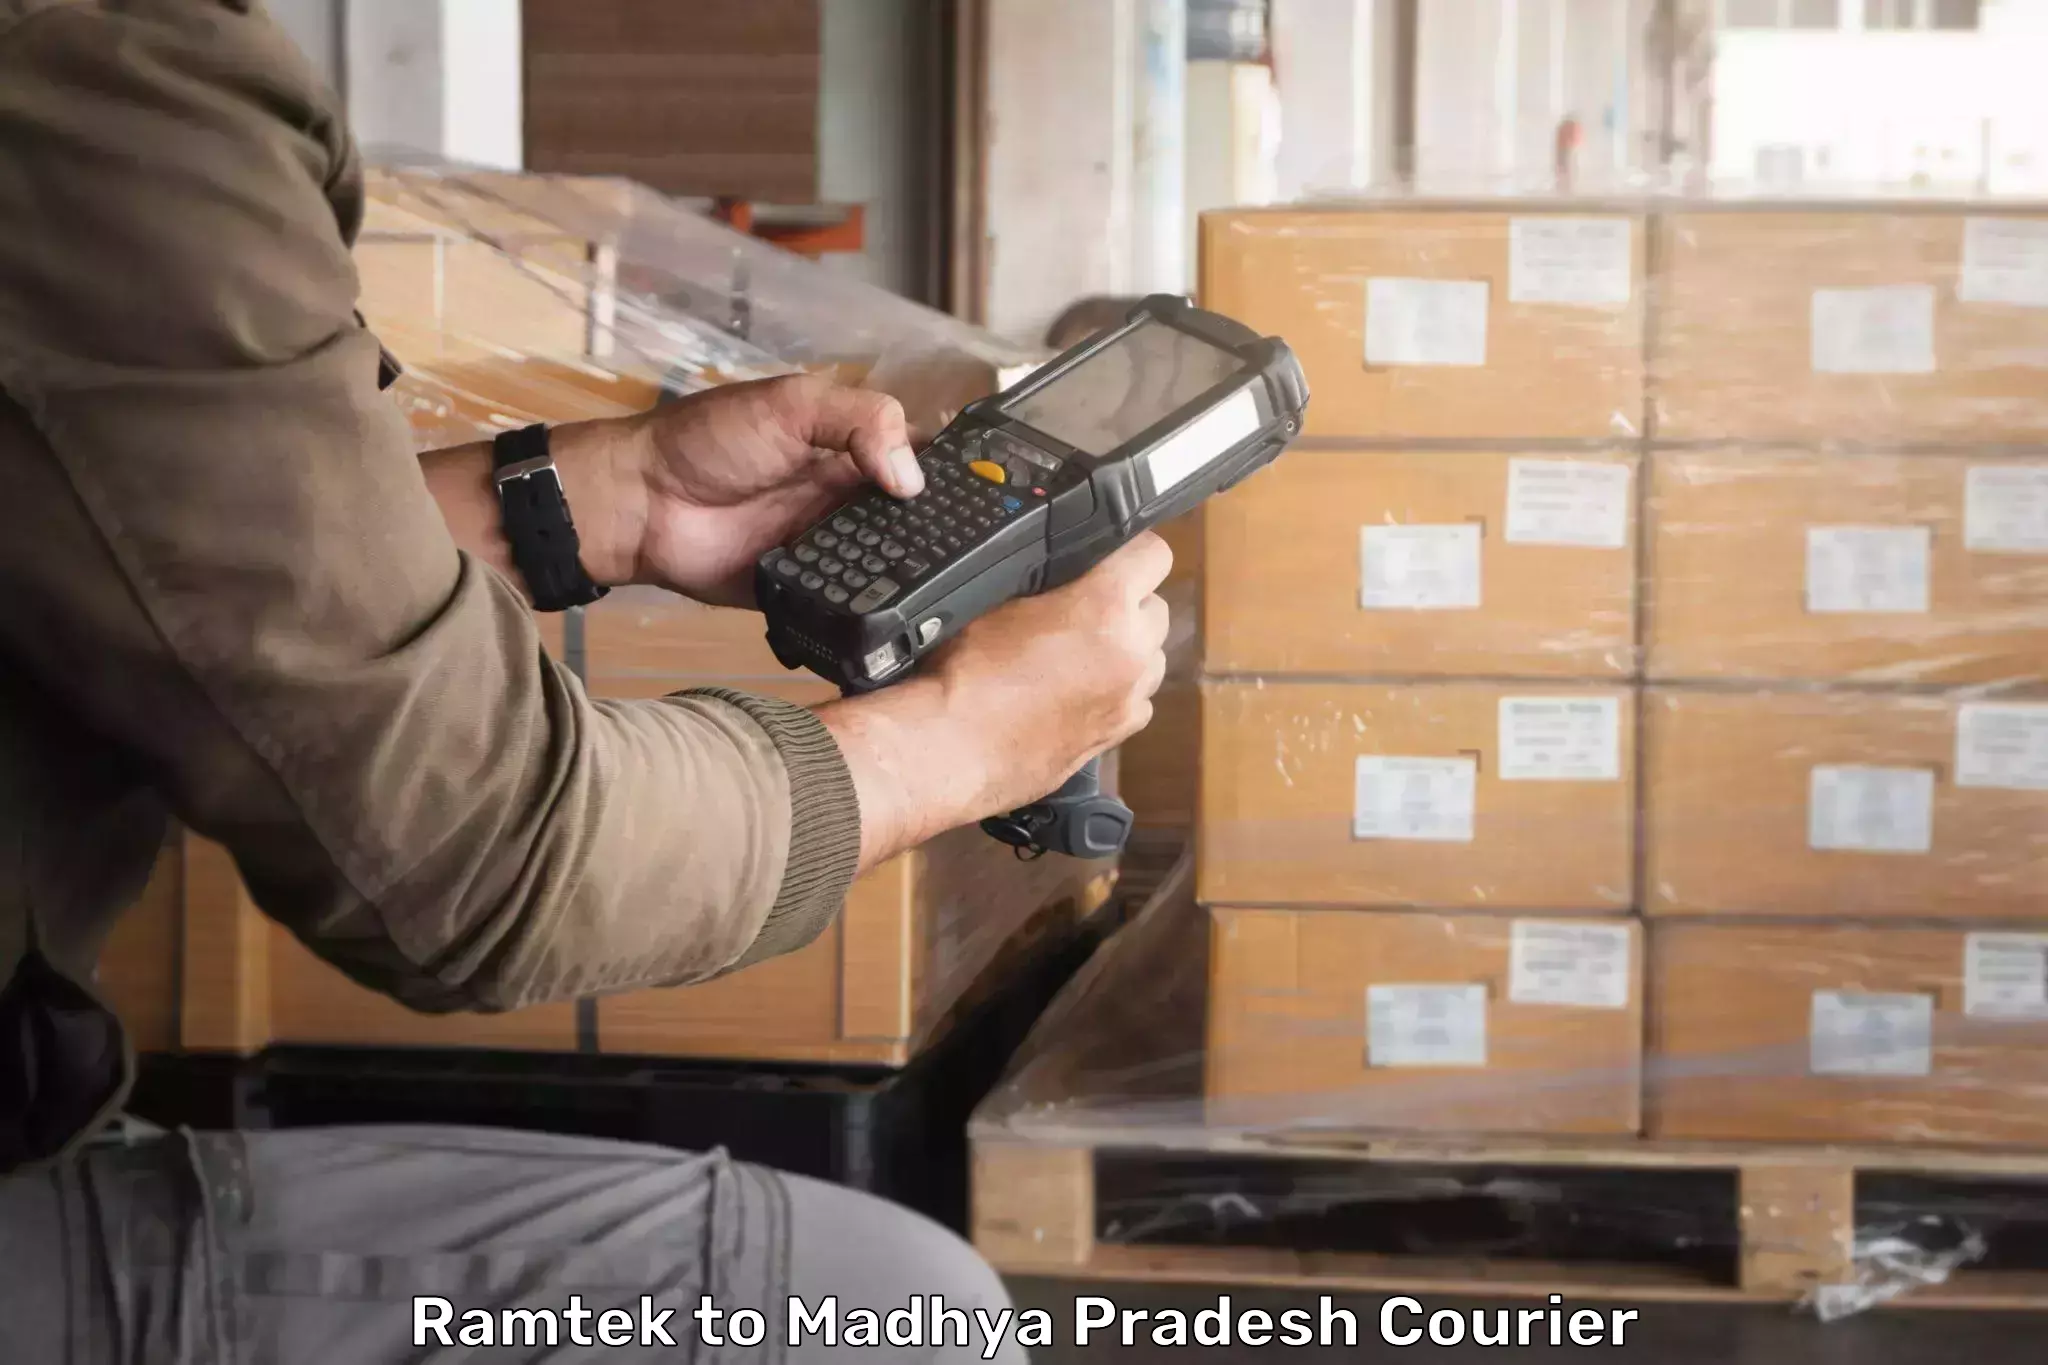 Courier service comparison Ramtek to Sendhwa